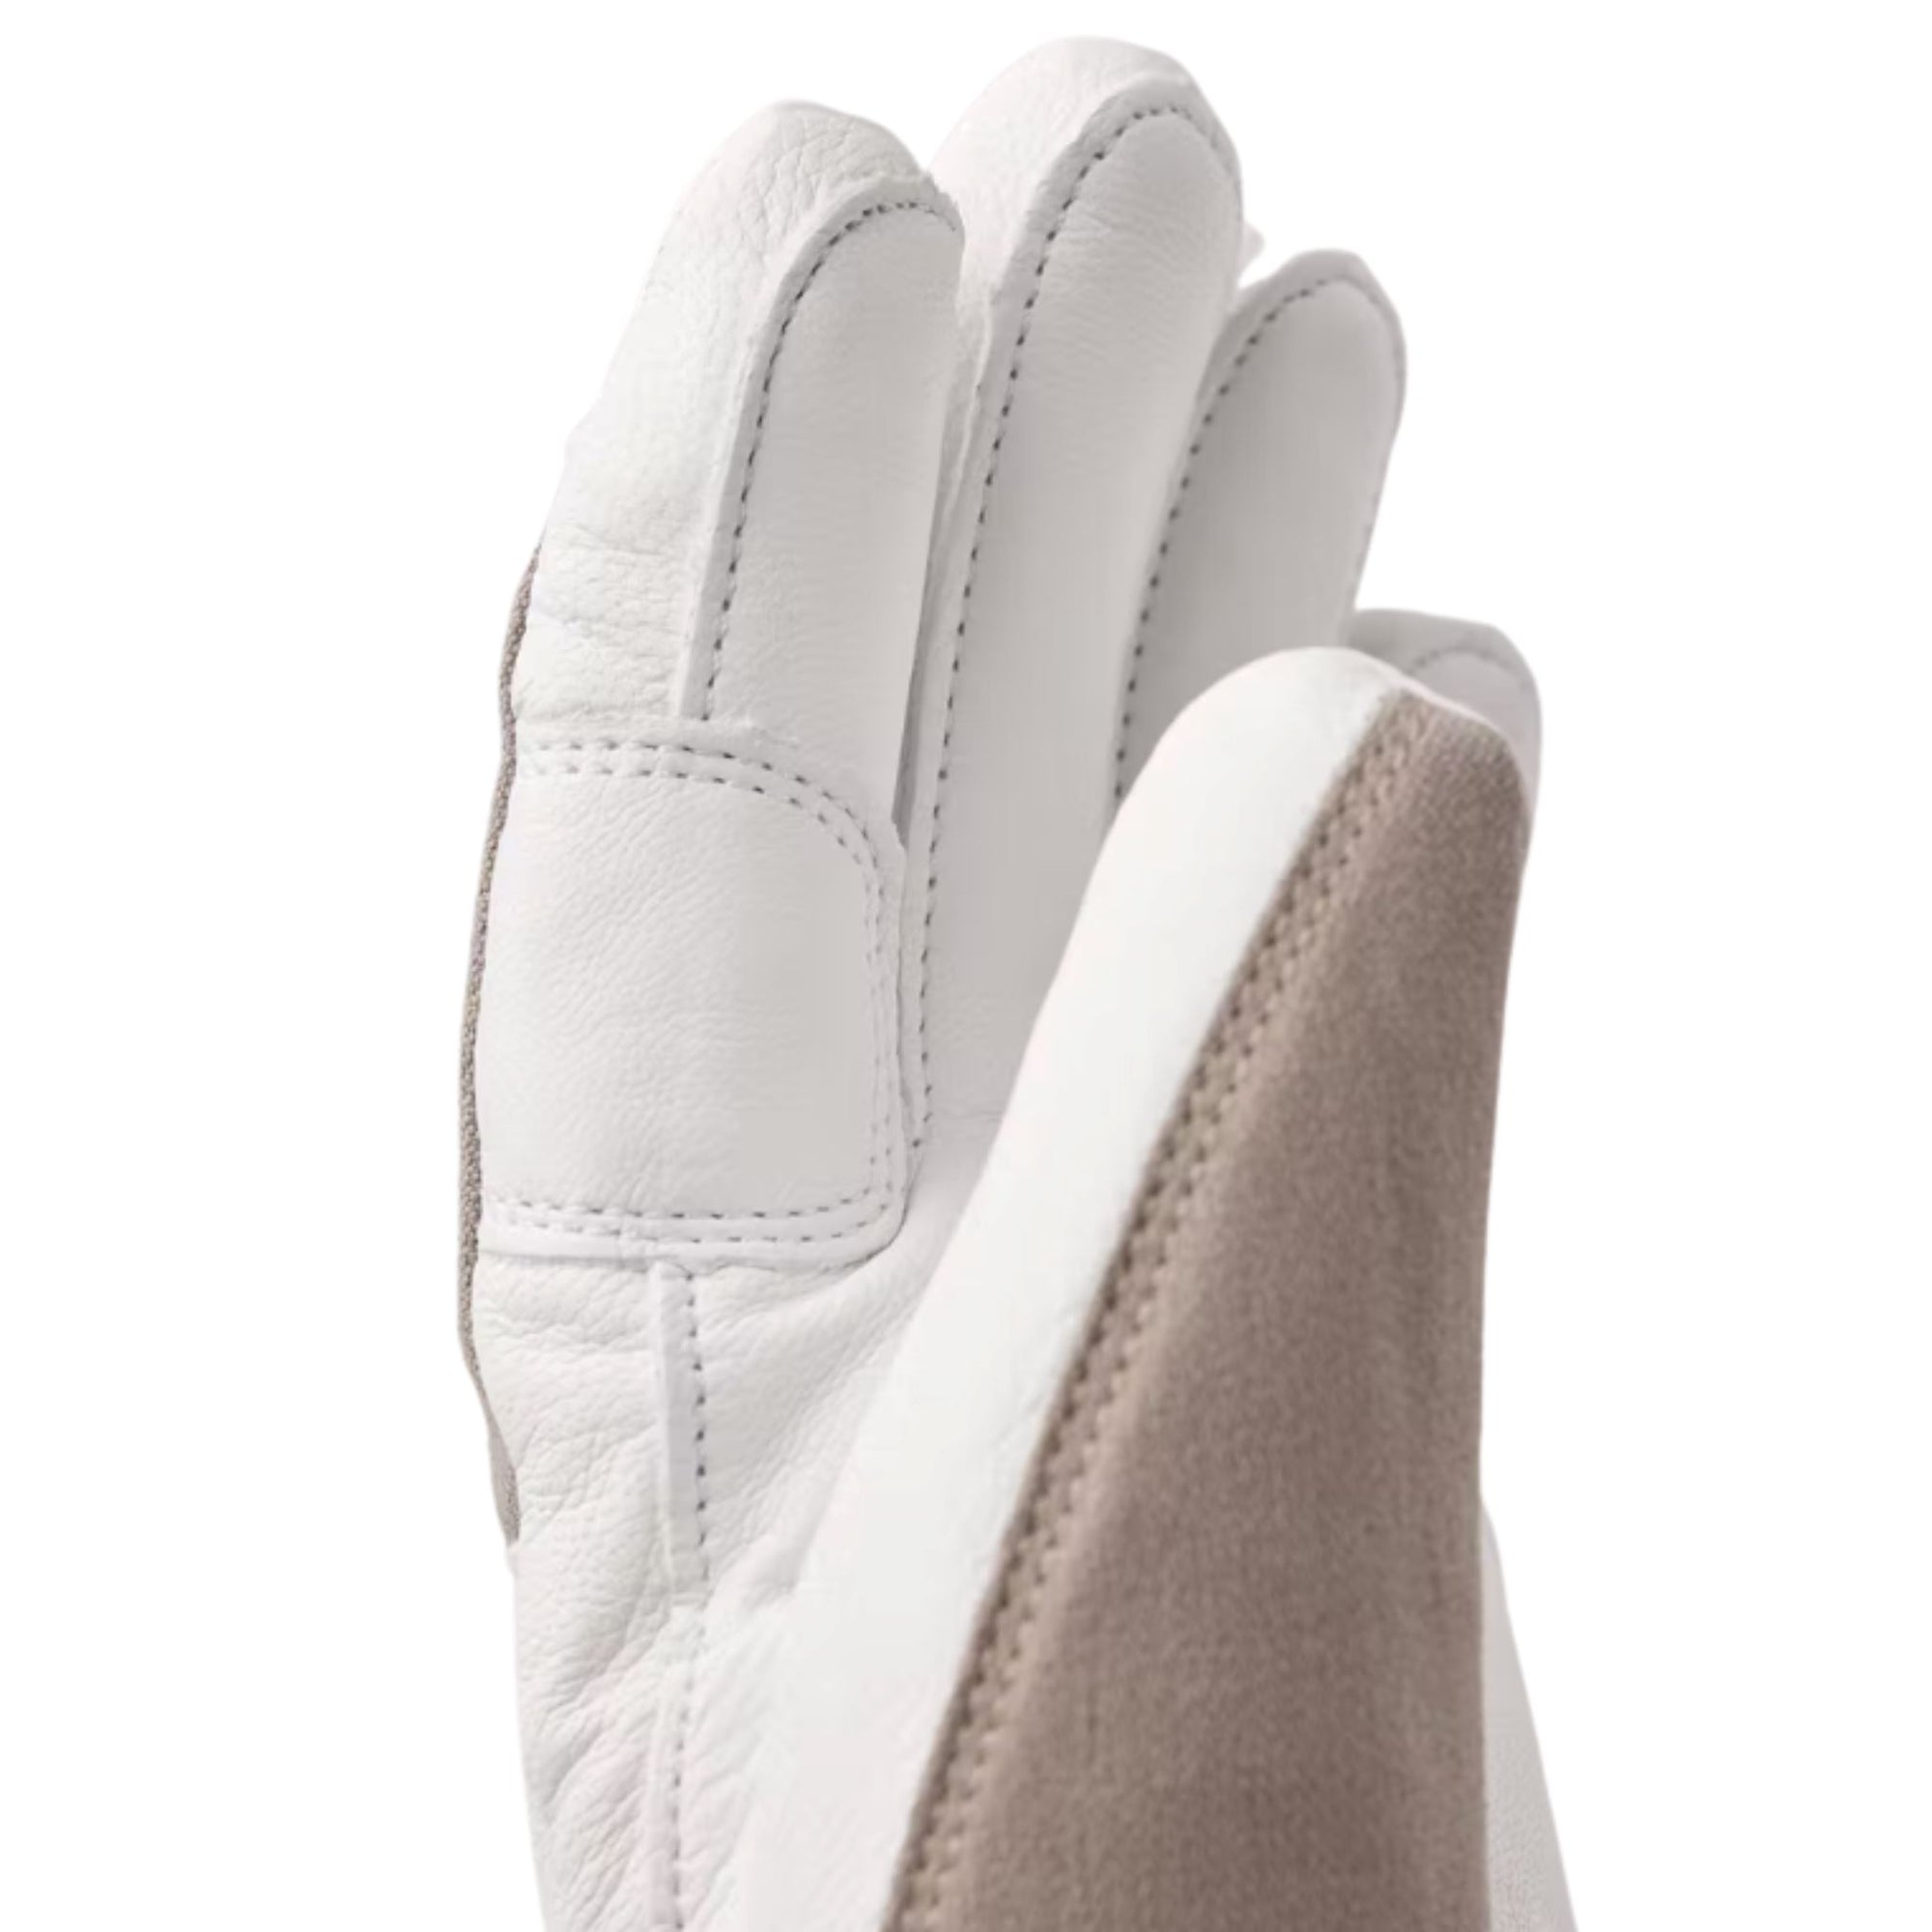 Hestra Voss CZone Glove - Beige/White Gloves | Mittens Hestra 6 (XS) 